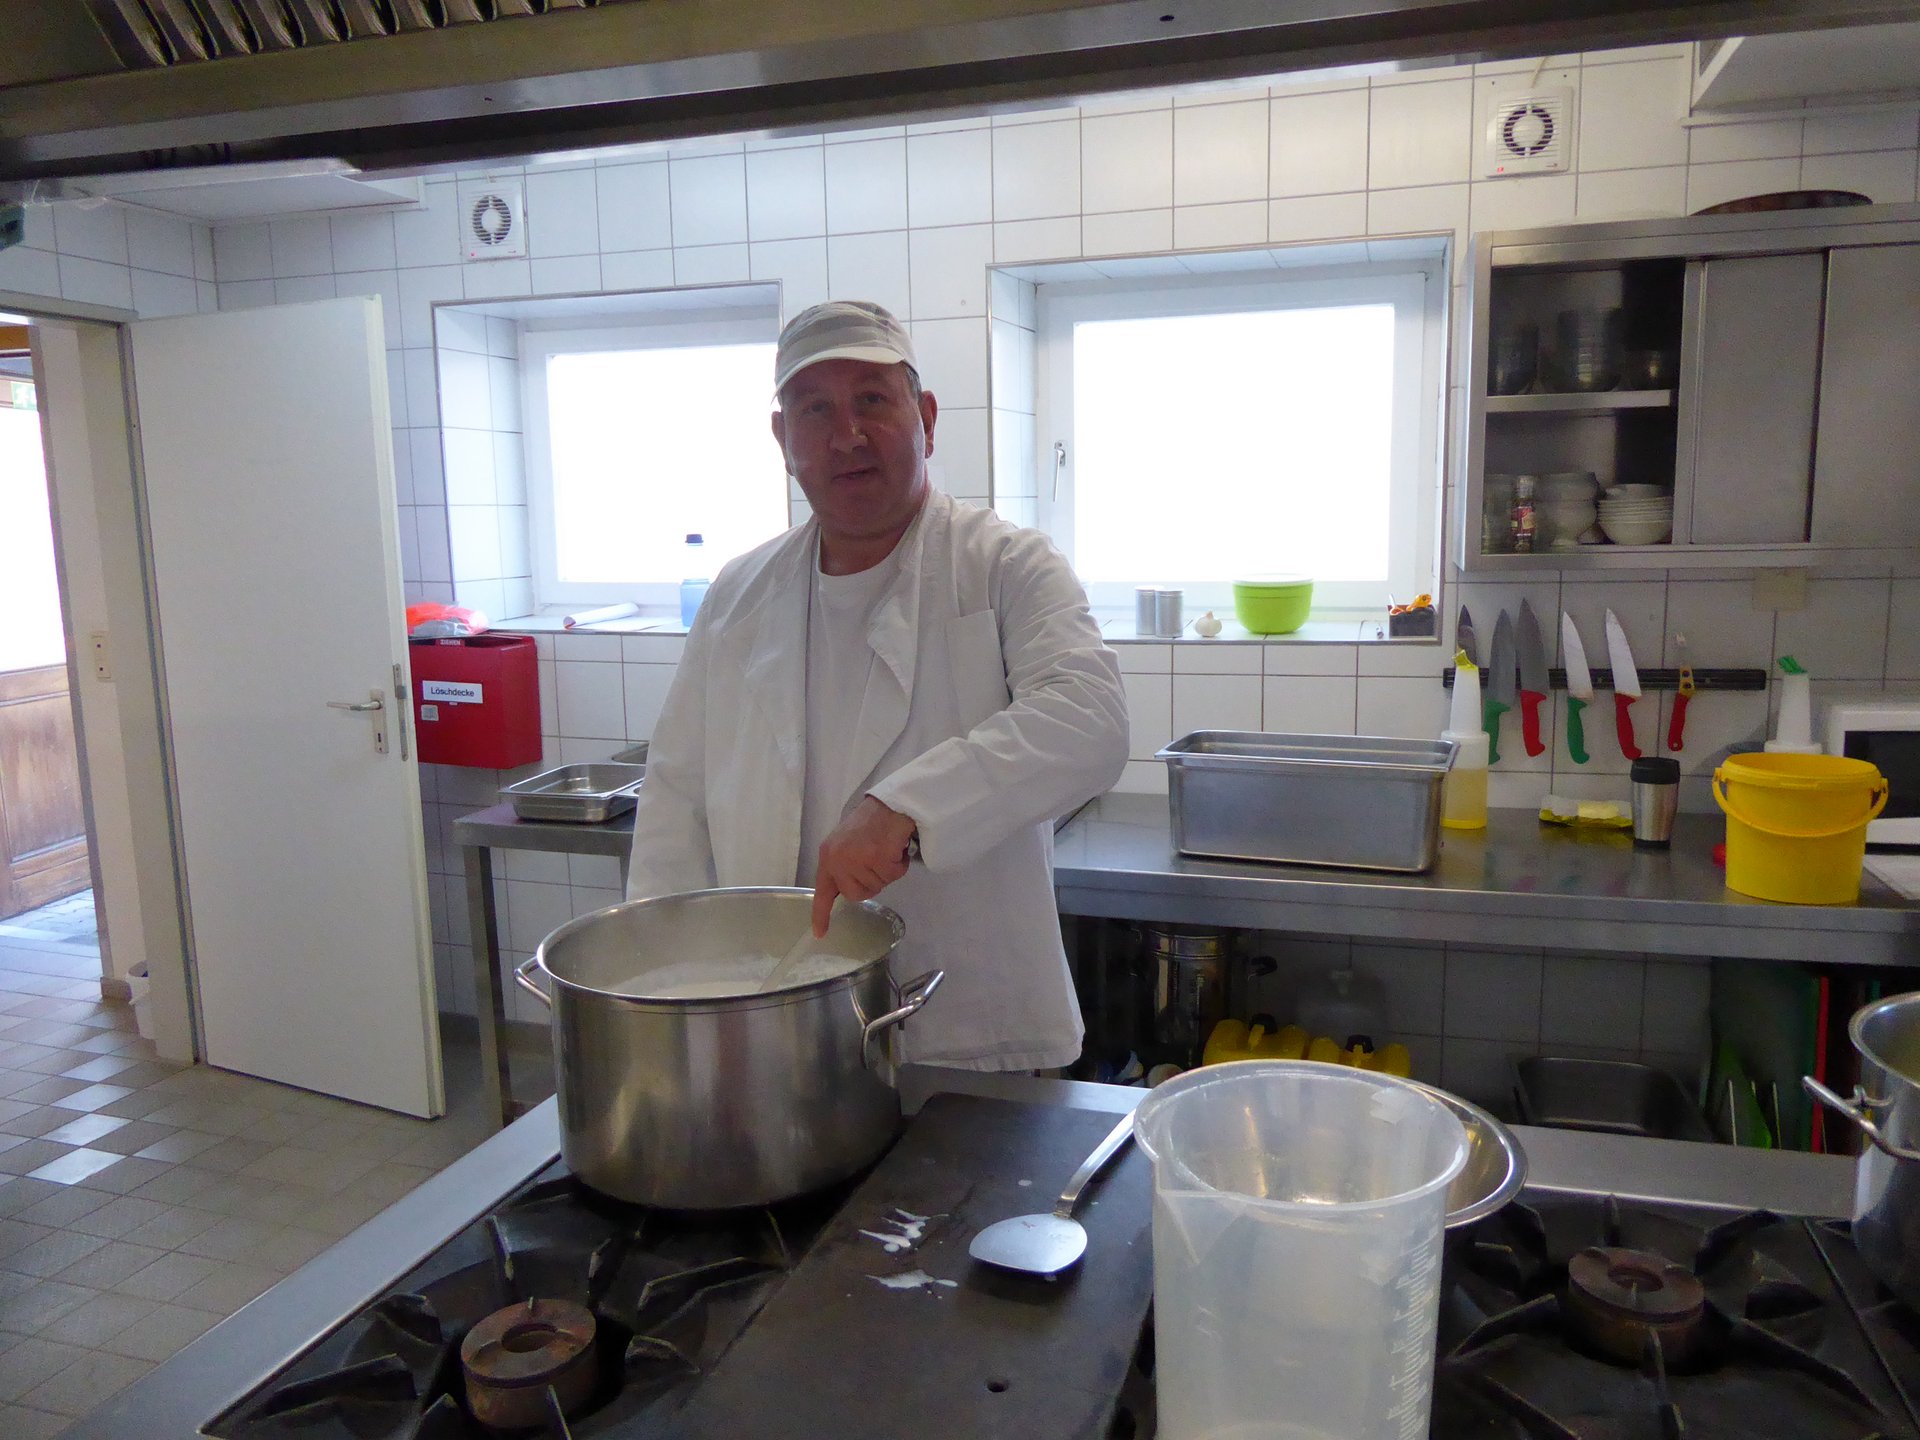 In einer Küche steht ein weiß gekleideter Mann mit Kochmütze und rührt in einem Topf.